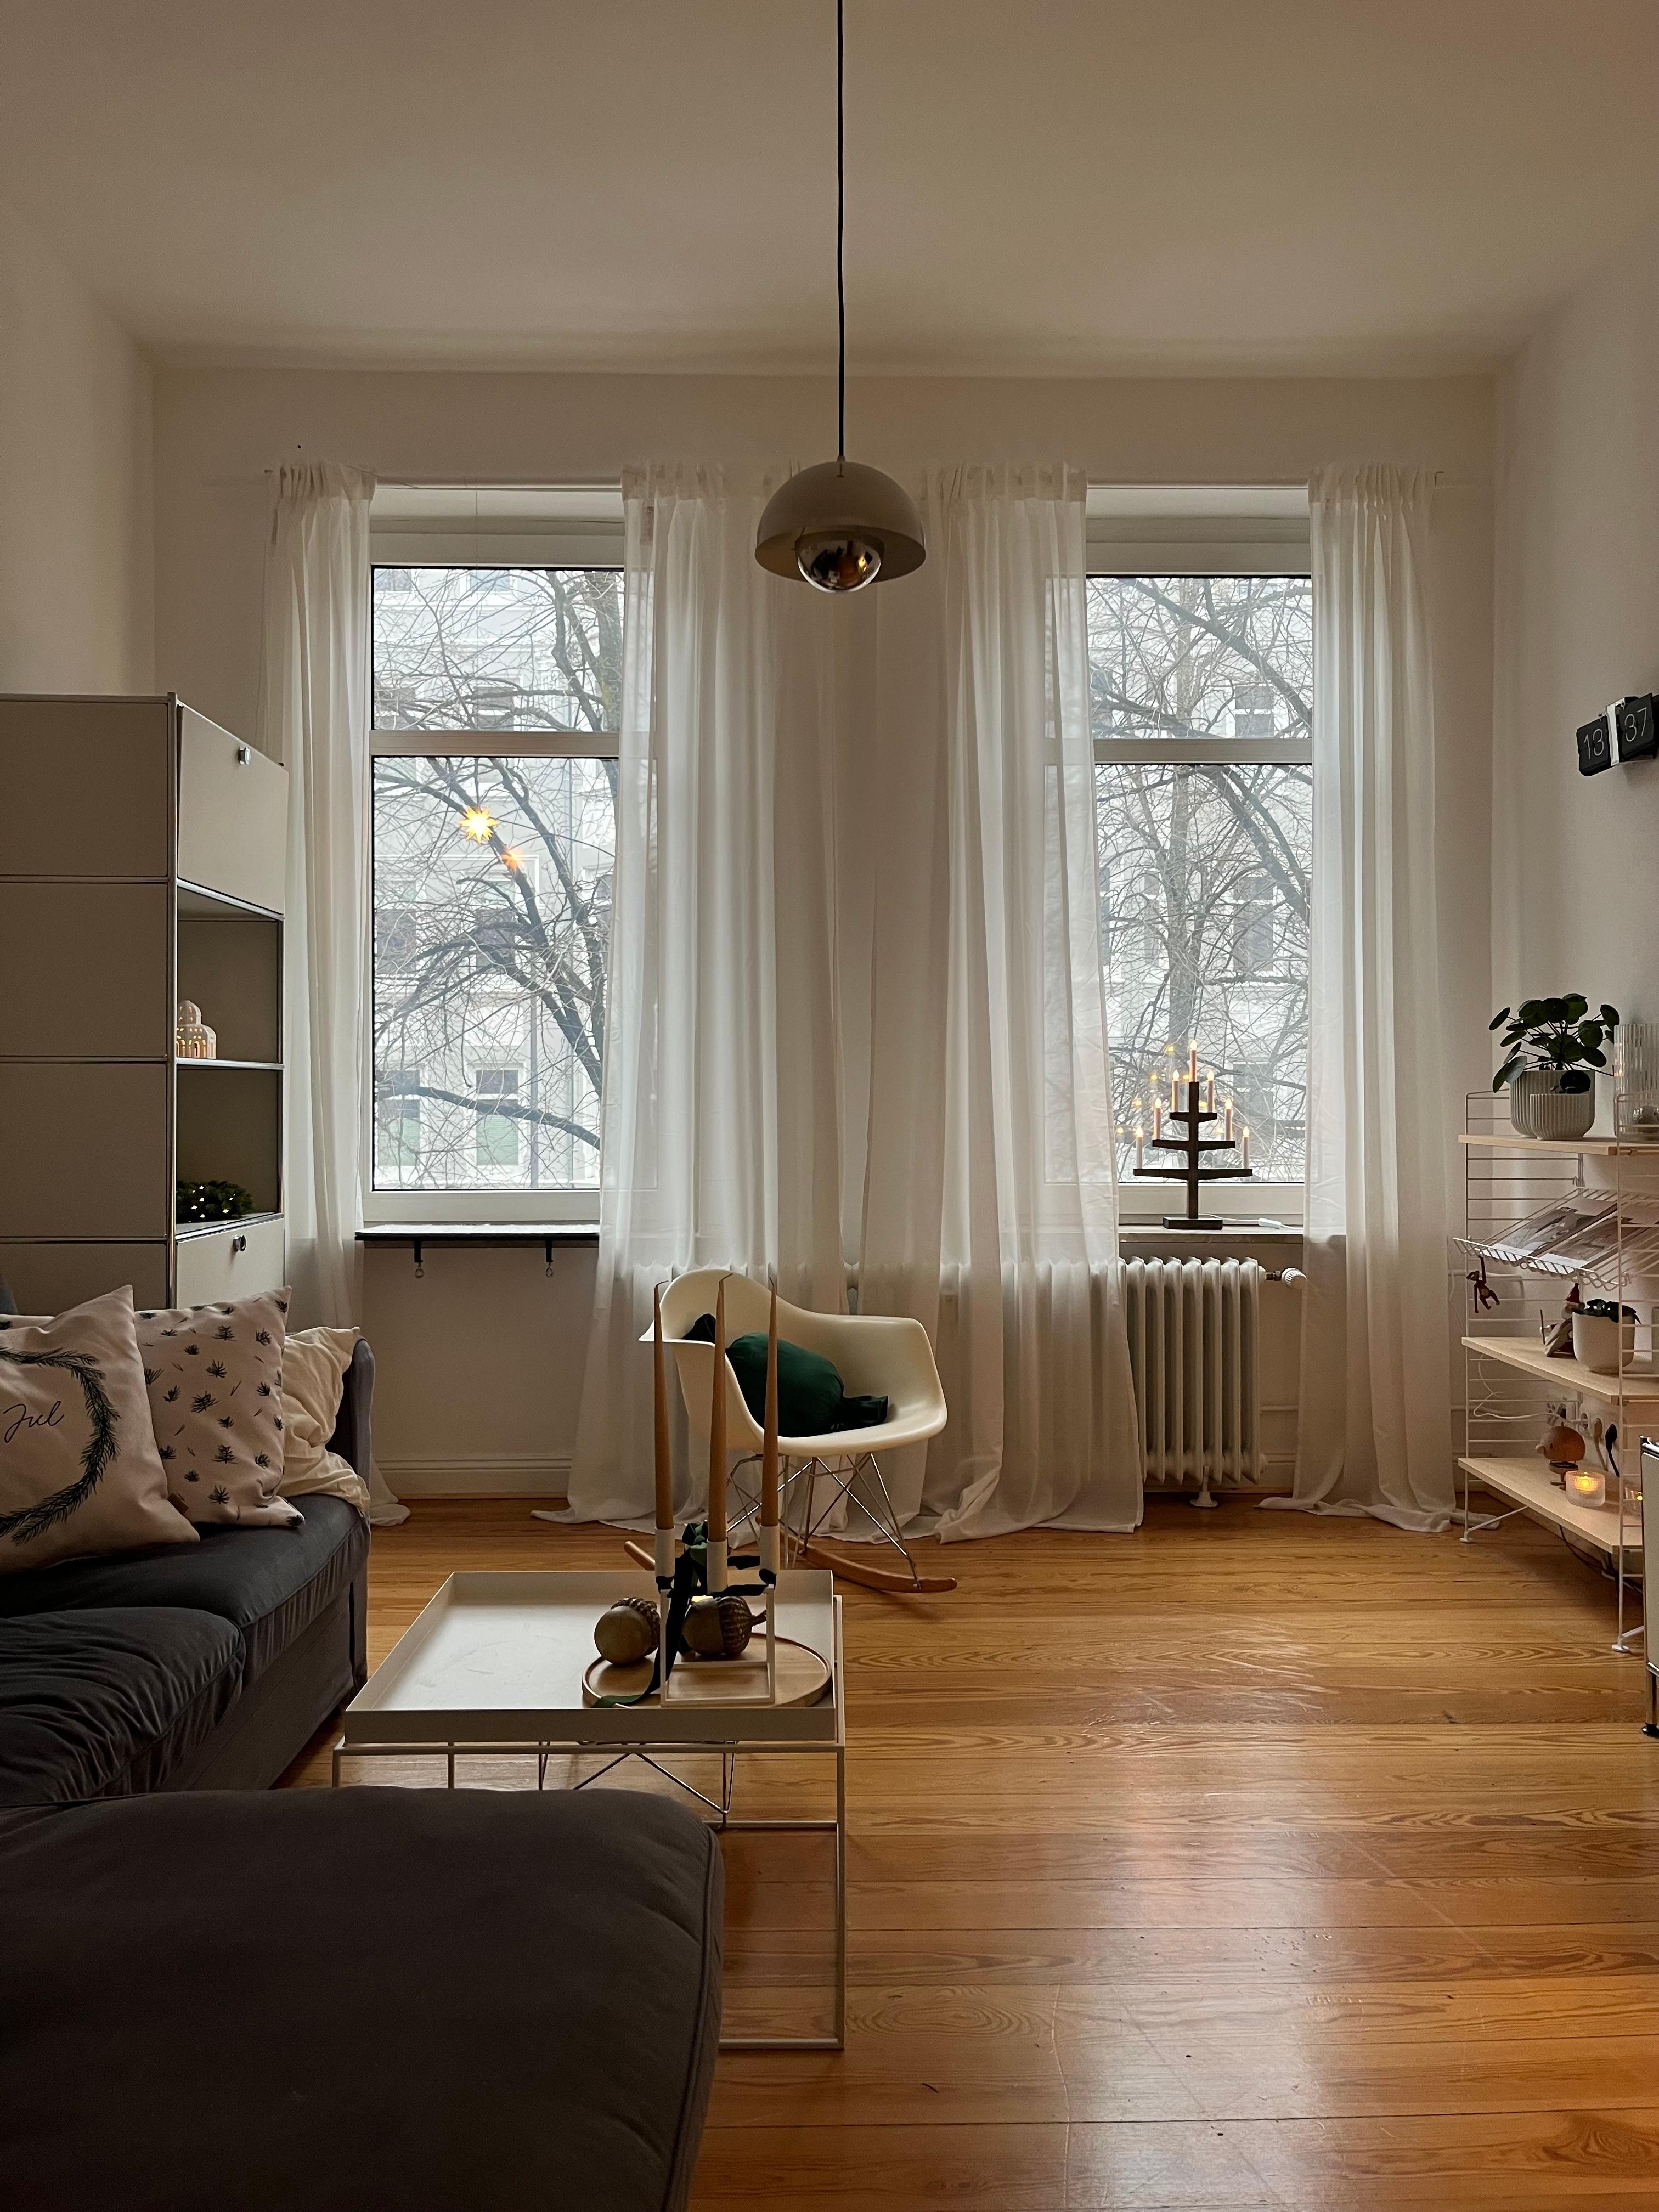 #wohnzimmer #altbauliebe #weihnachtsdeko #cozy #hygge 